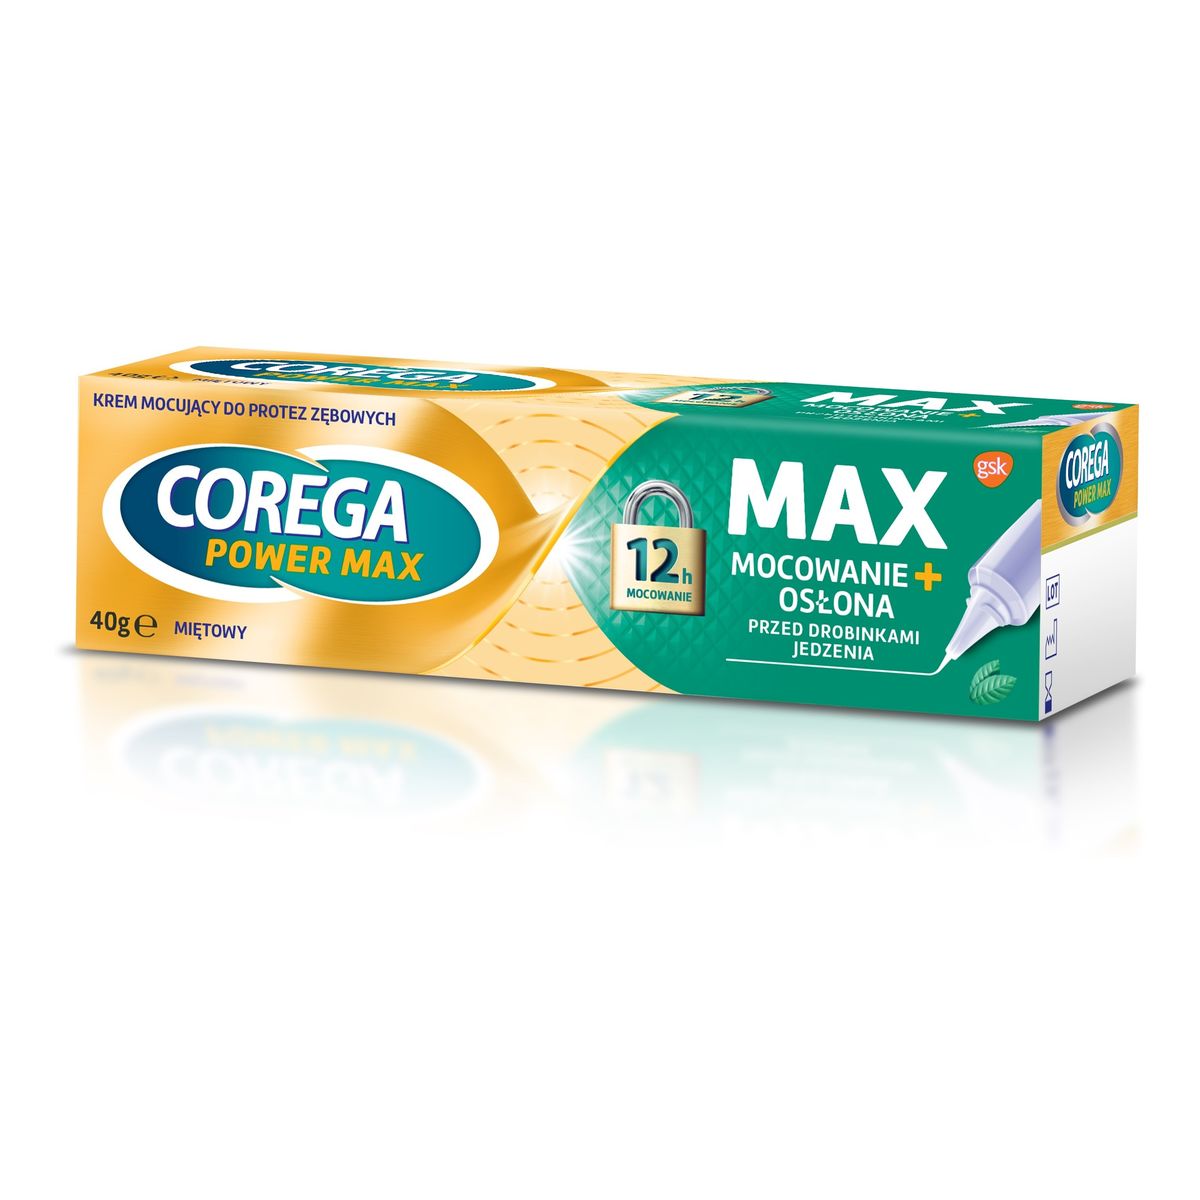 Corega Power Max Krem mocujący do protez zębowych max mocowanie+osłona-miętowy 40g